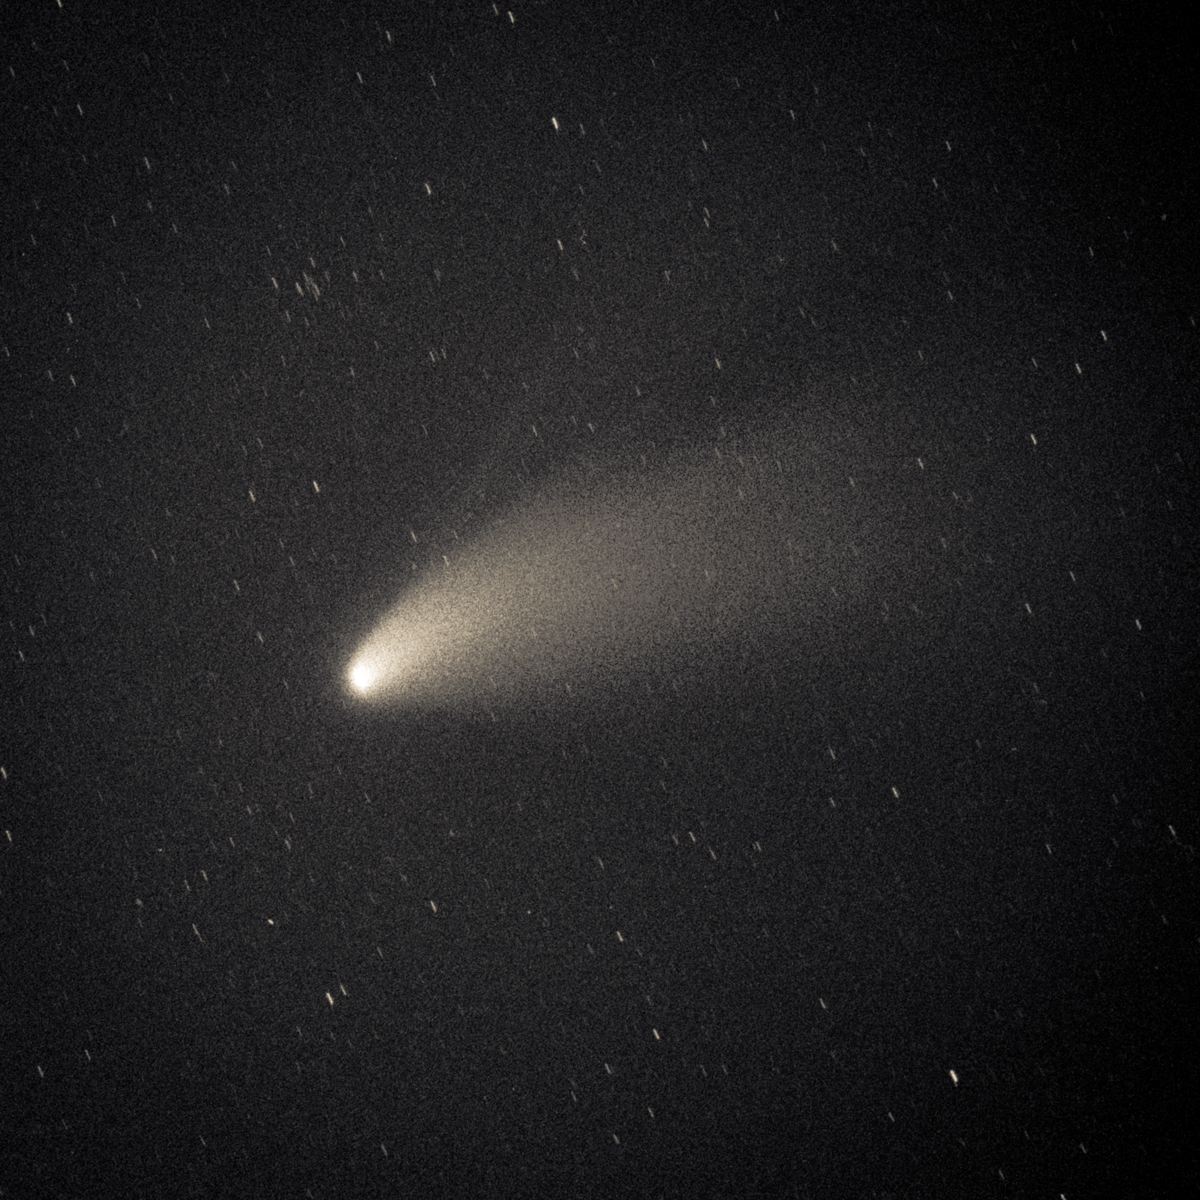 Hale-Bopp Comet 1995